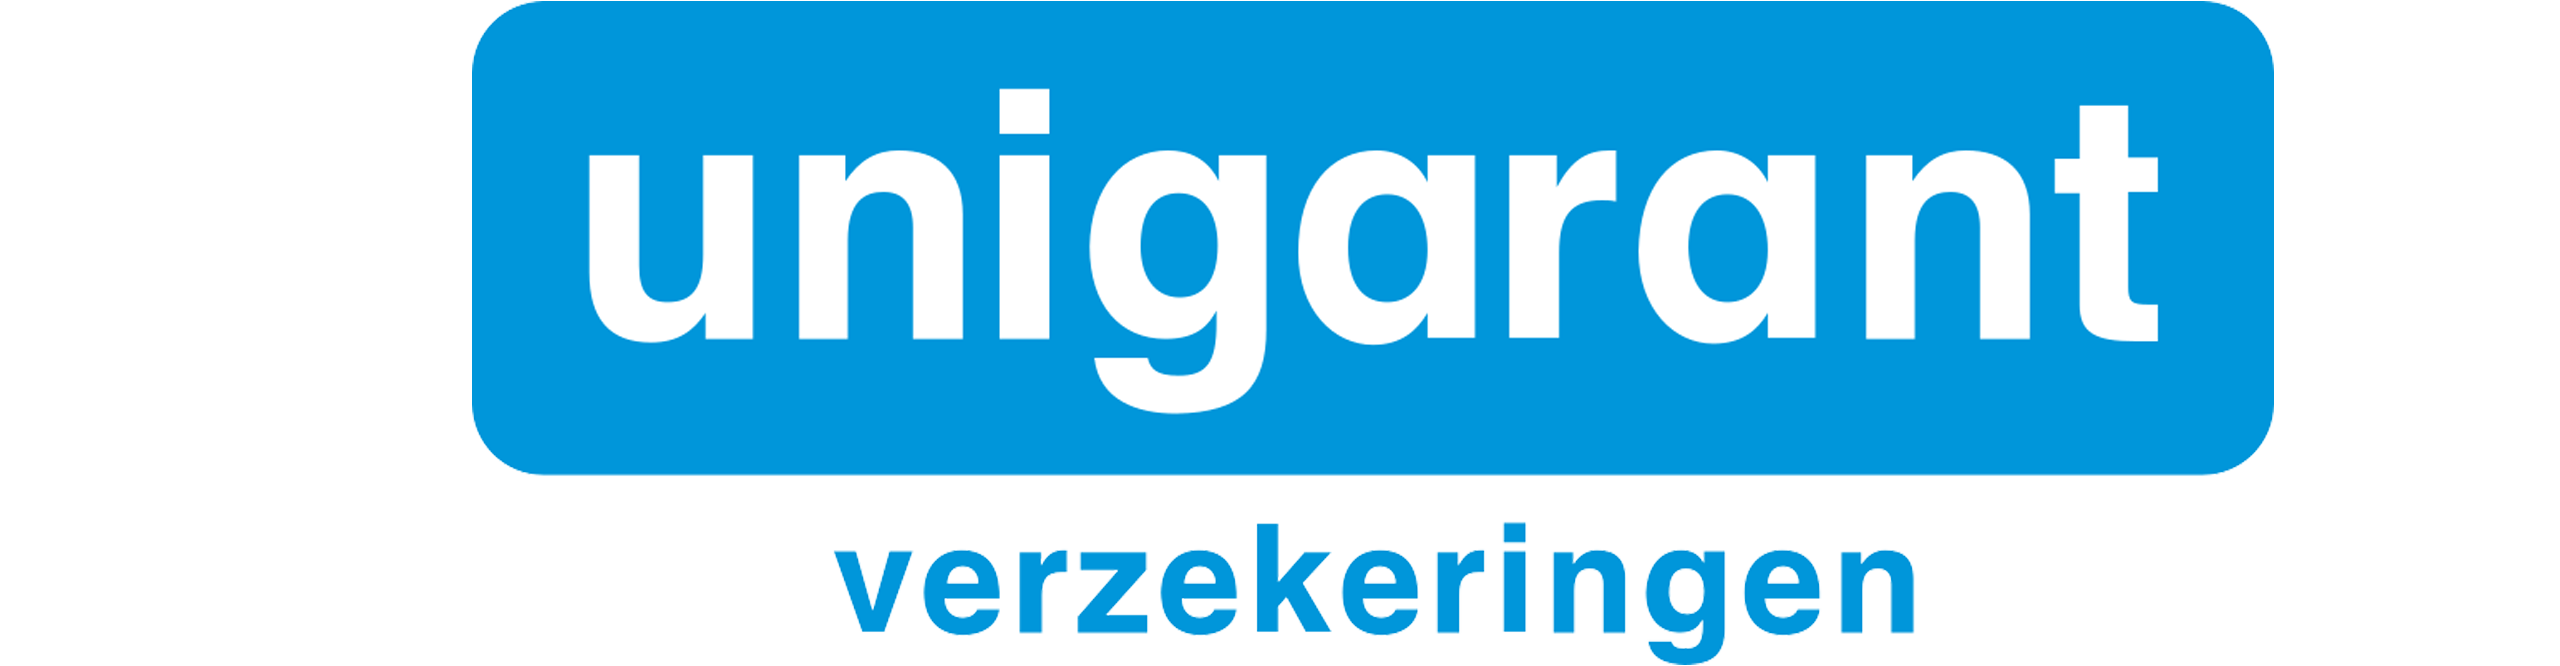 Unigarant logo